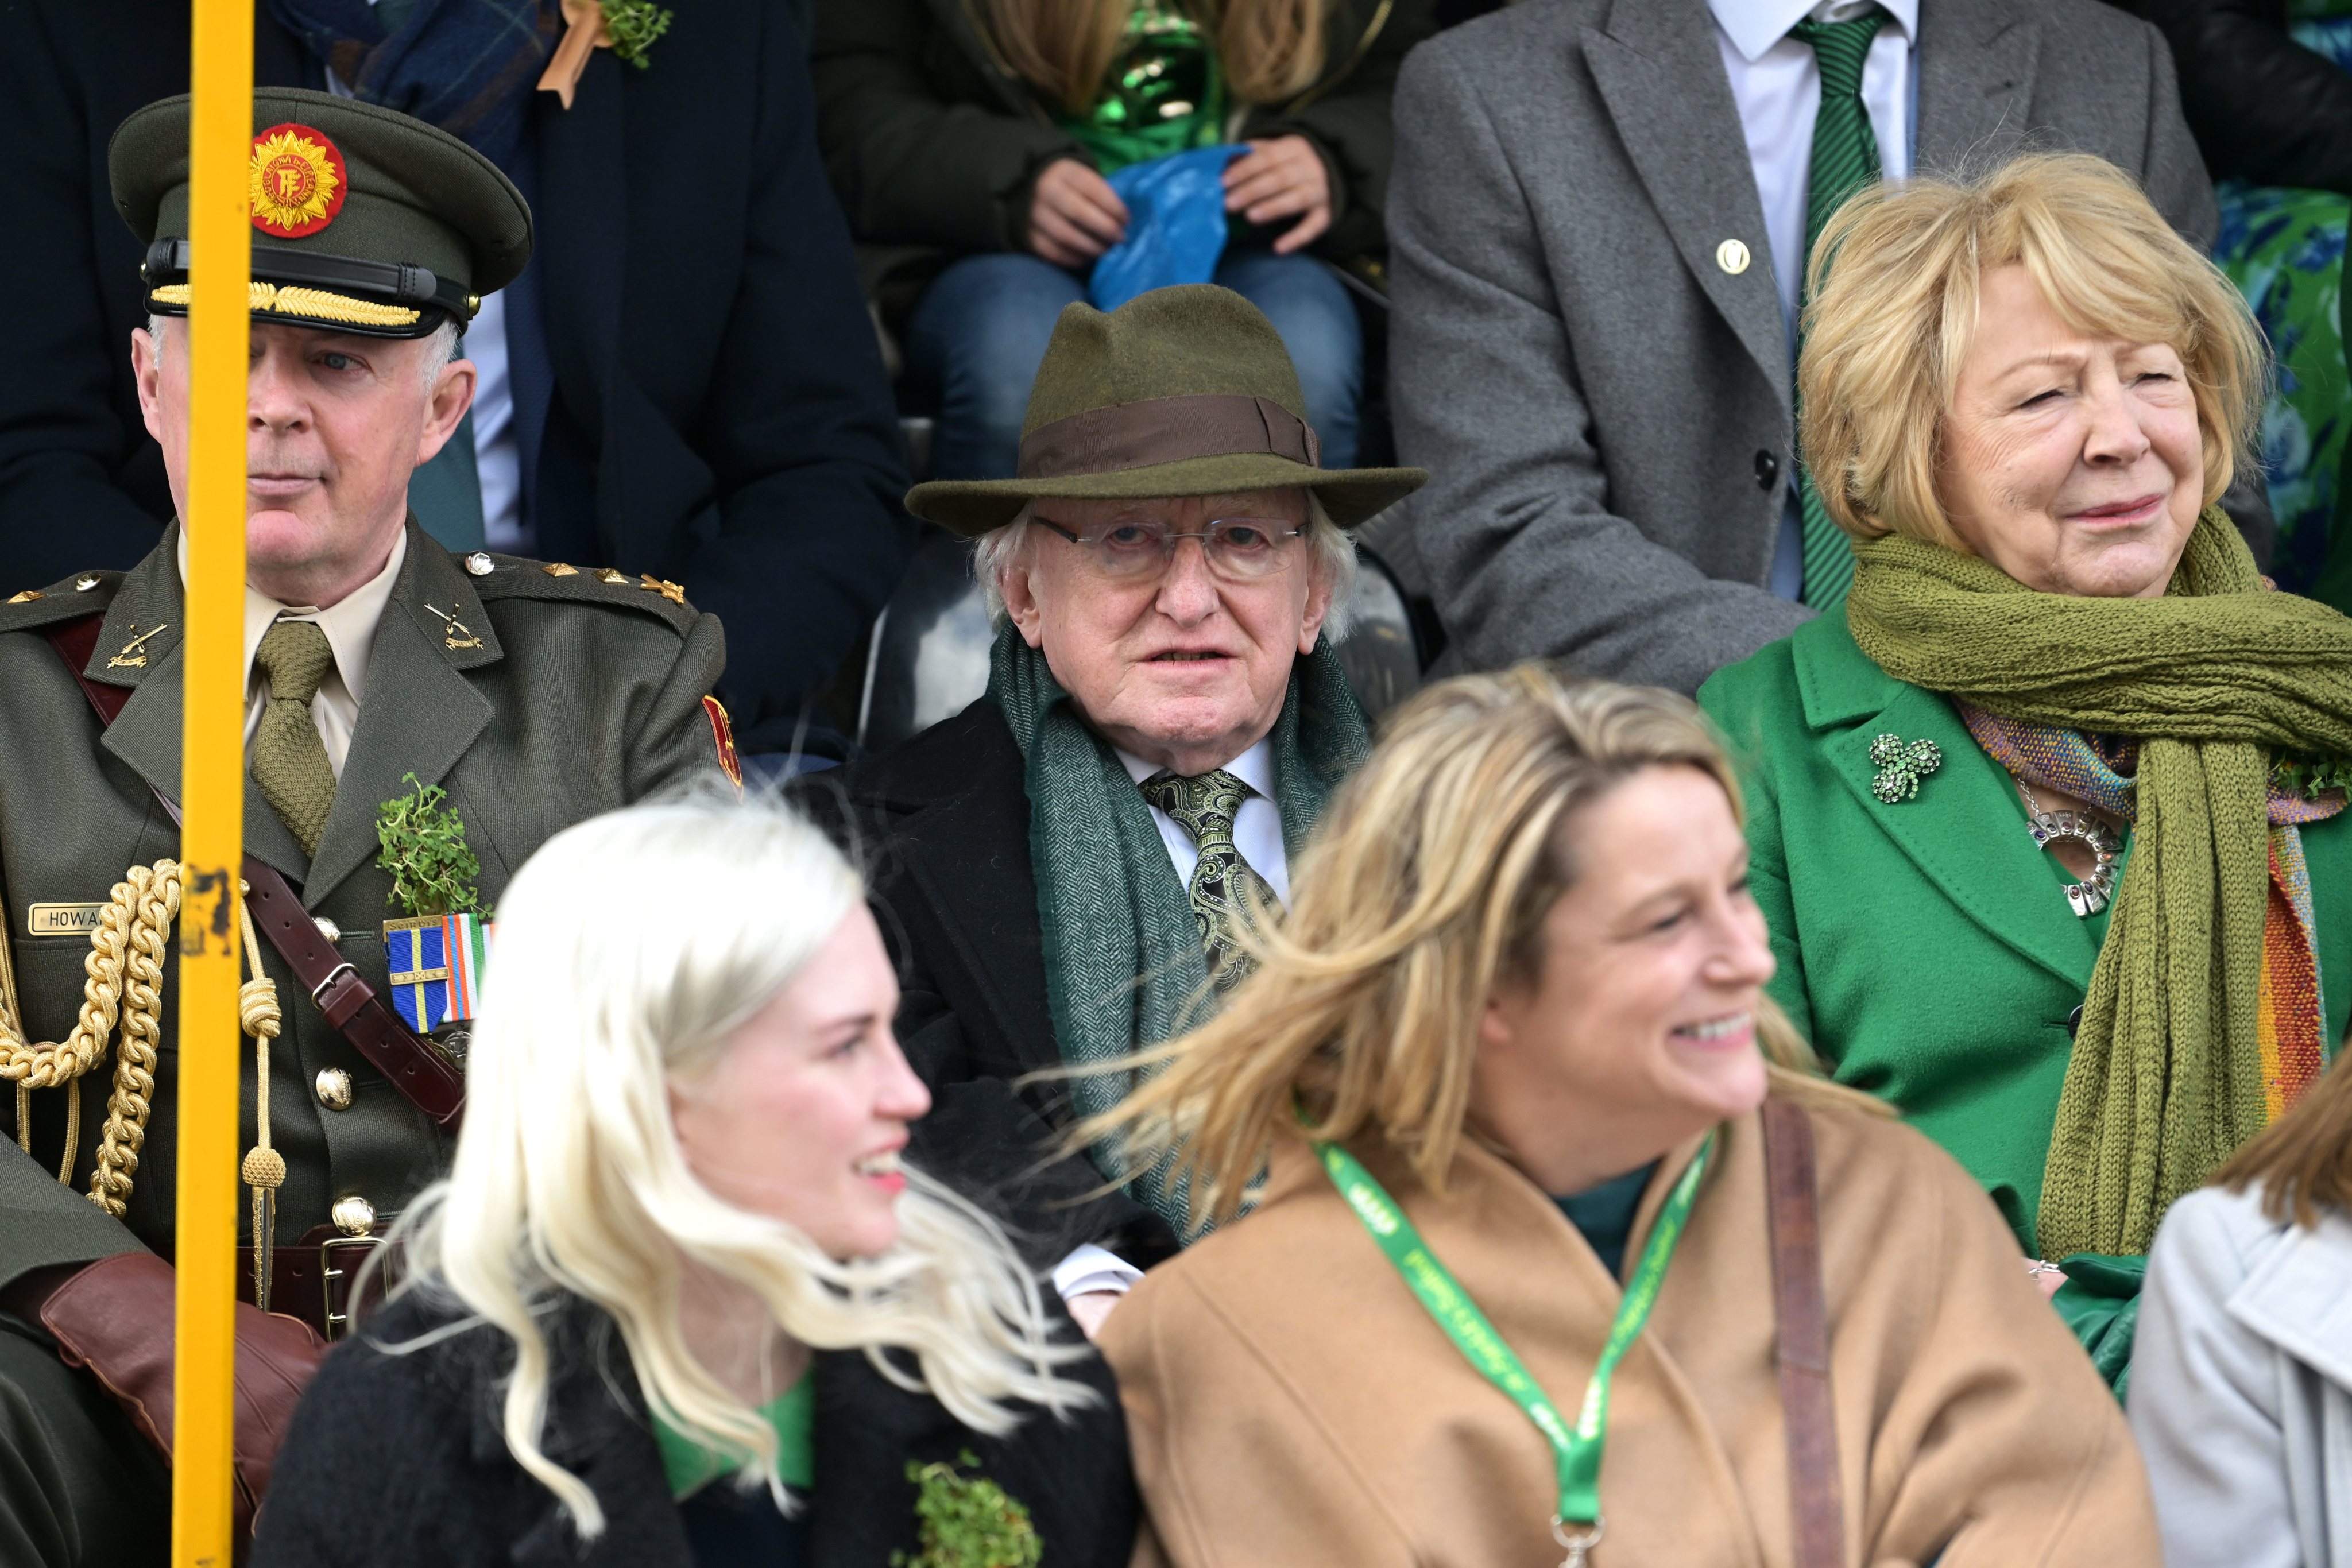 O Presidente da Irlanda, Michael D. Higgins (C) com a sua mulher, Sabina Coyne (D), na marcha do Dia de São Patrício, em Dublin, capital da Irlanda